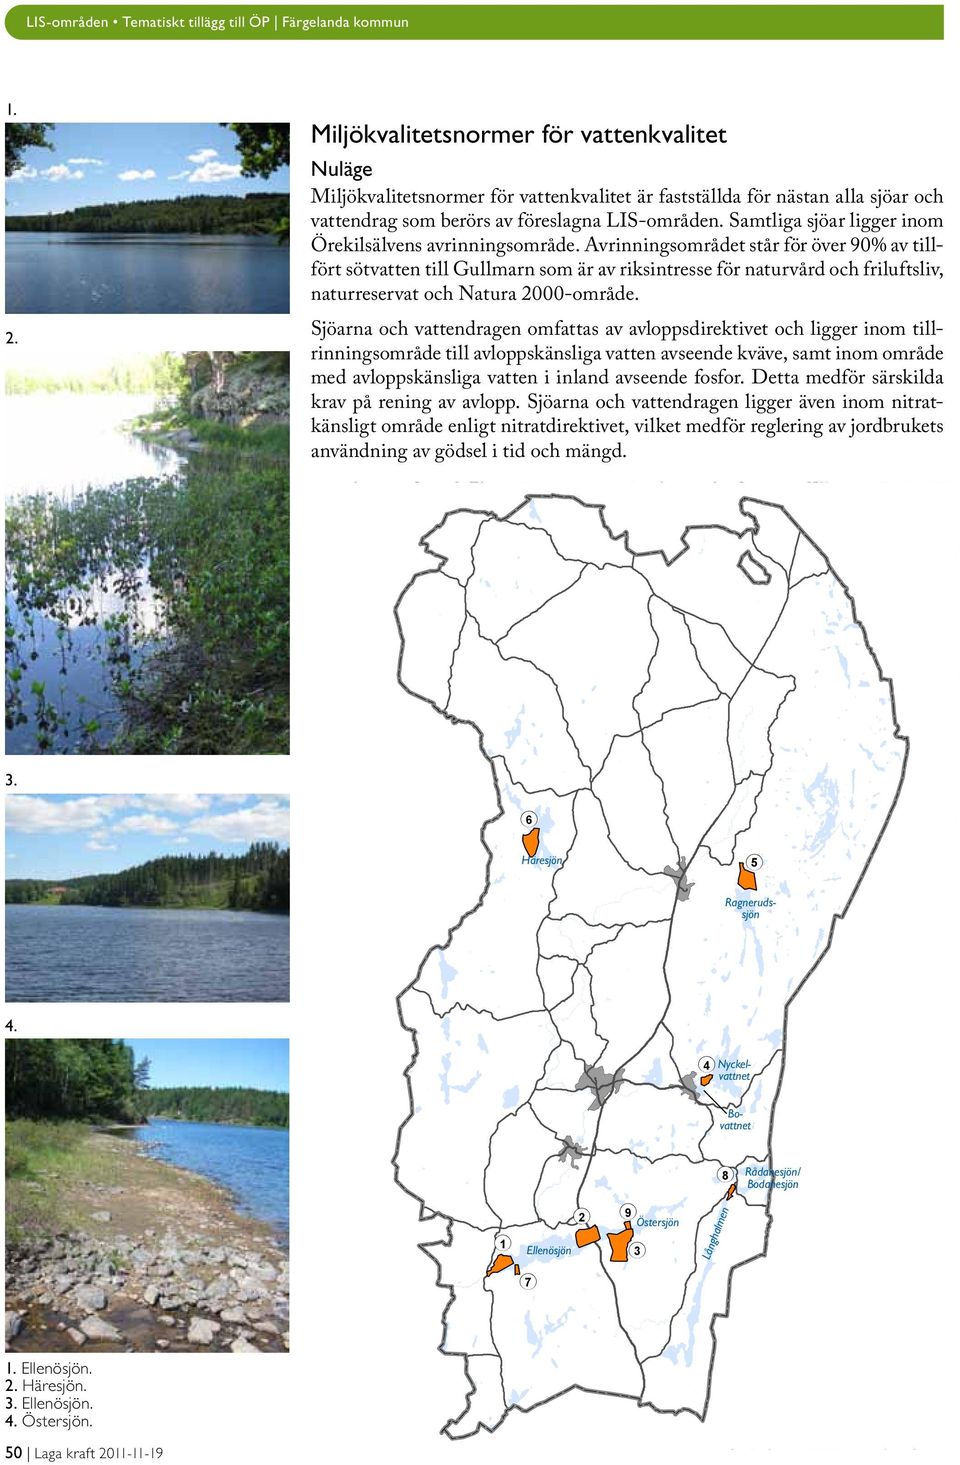 Avrinningsområdet står för över 90% av tillfört sötvatten till Gullmarn som är av riksintresse för naturvård och friluftsliv, naturreservat och Natura 2000-område.